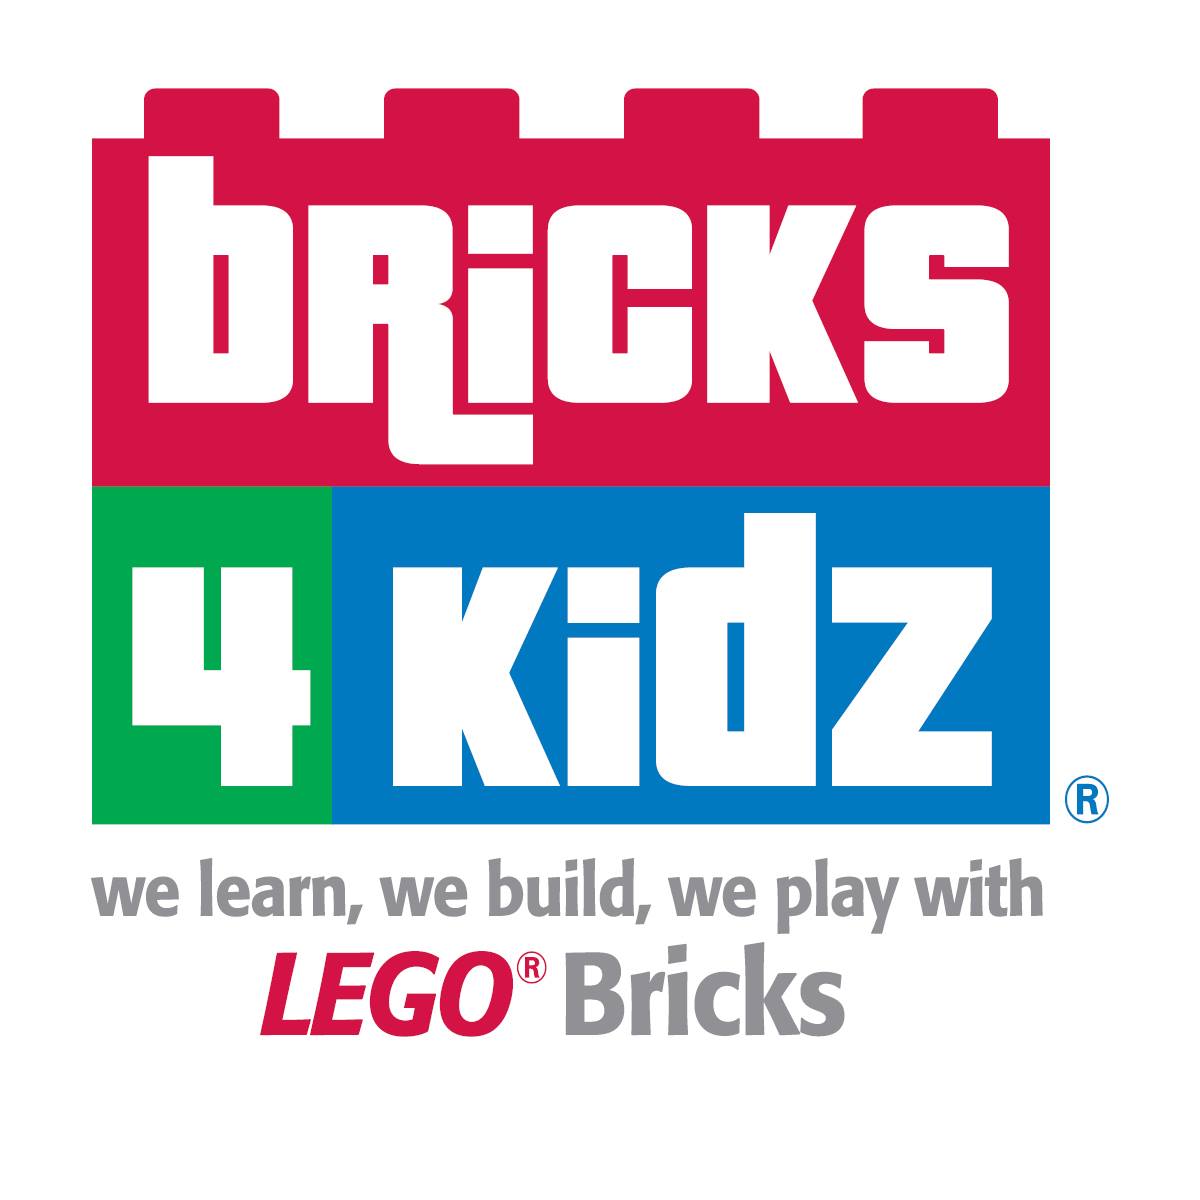 My Bricks4Kidz